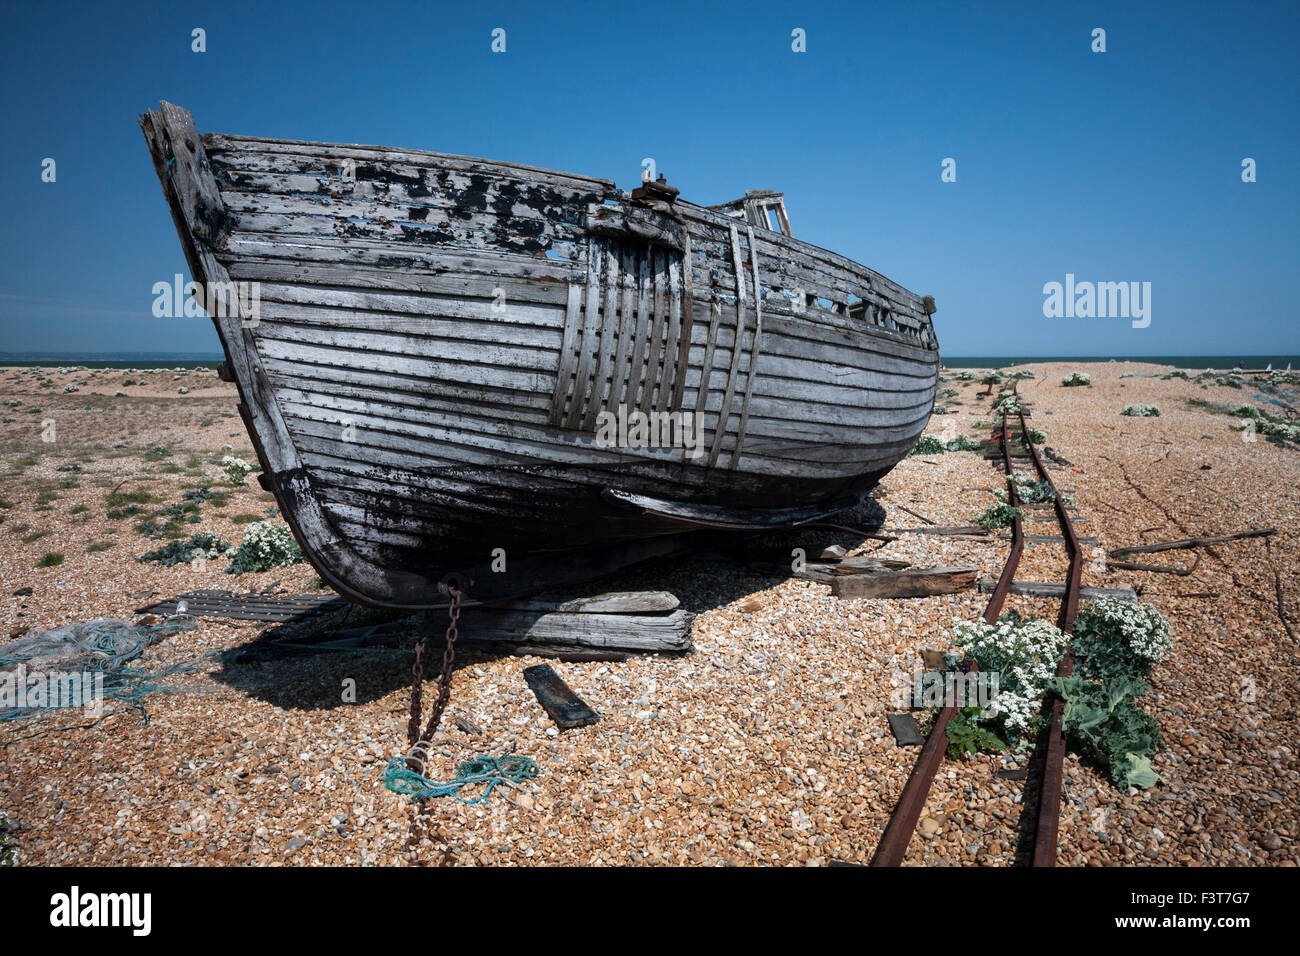 Bateau de pêche abandonnés sur la plage de galets, Dungeness, Kent, England, UK Banque D'Images